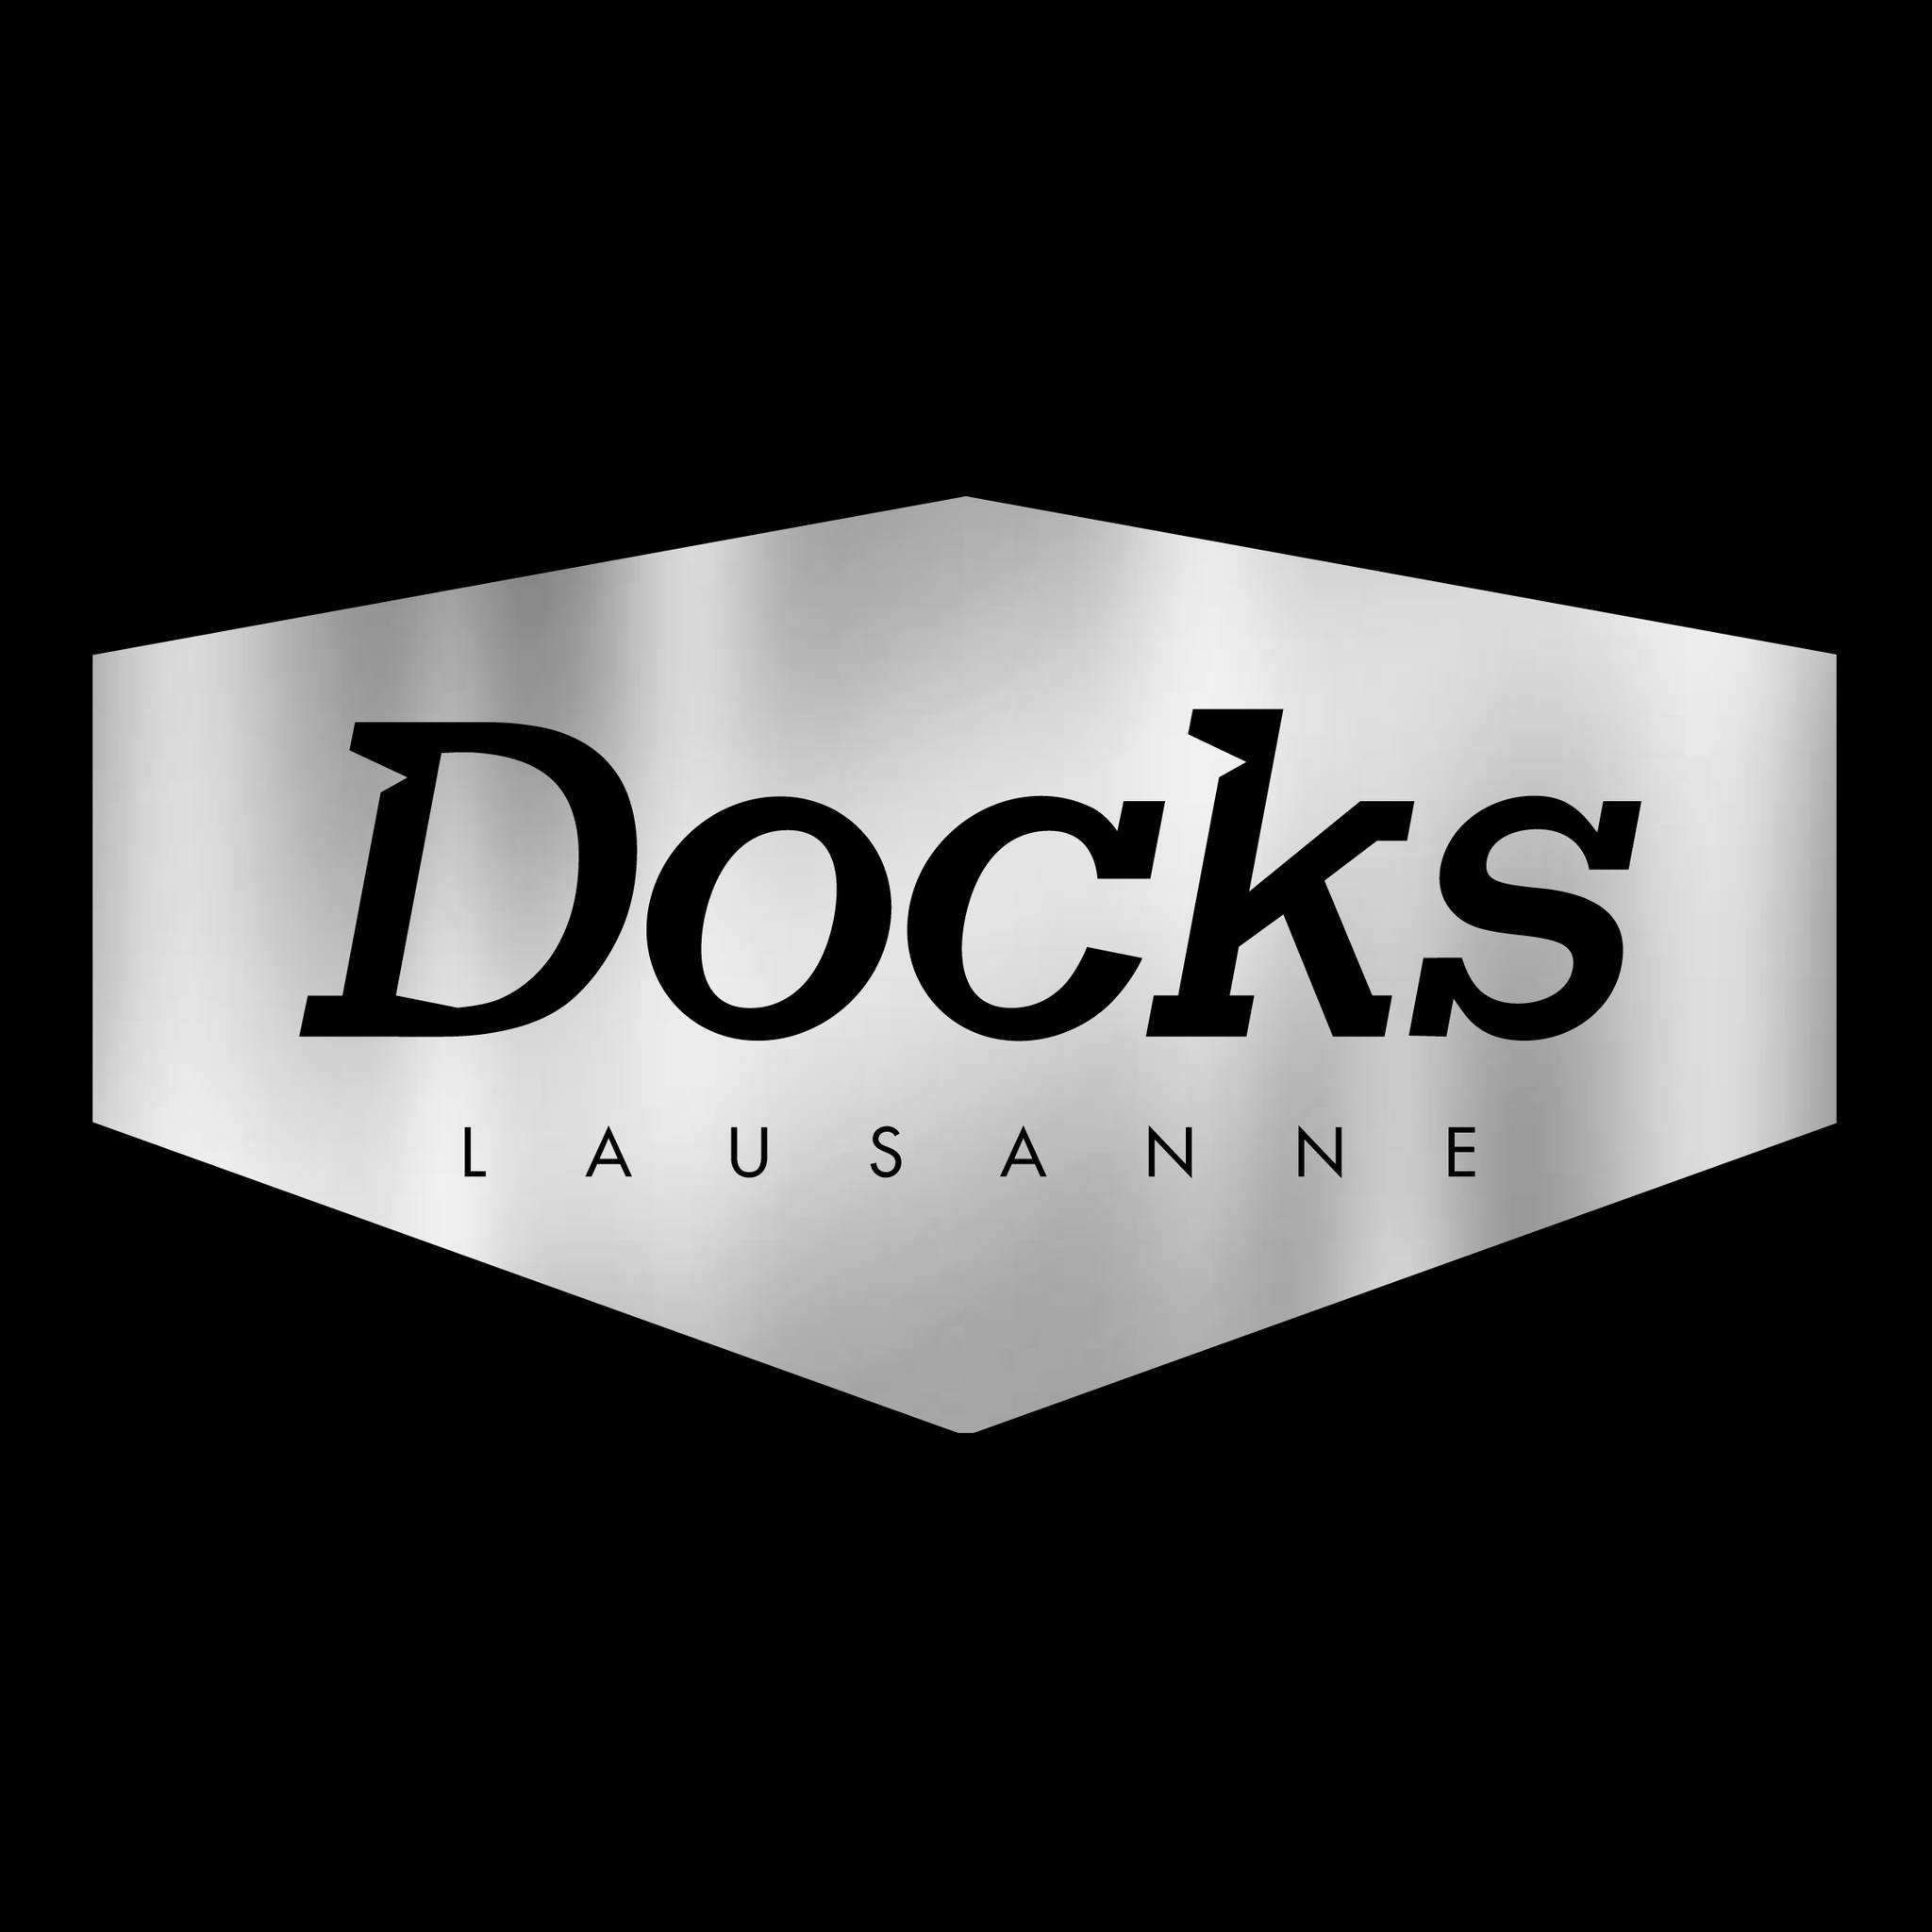 Rendez Vous - Ultra Sunn en Les Docks Lausanne Tickets